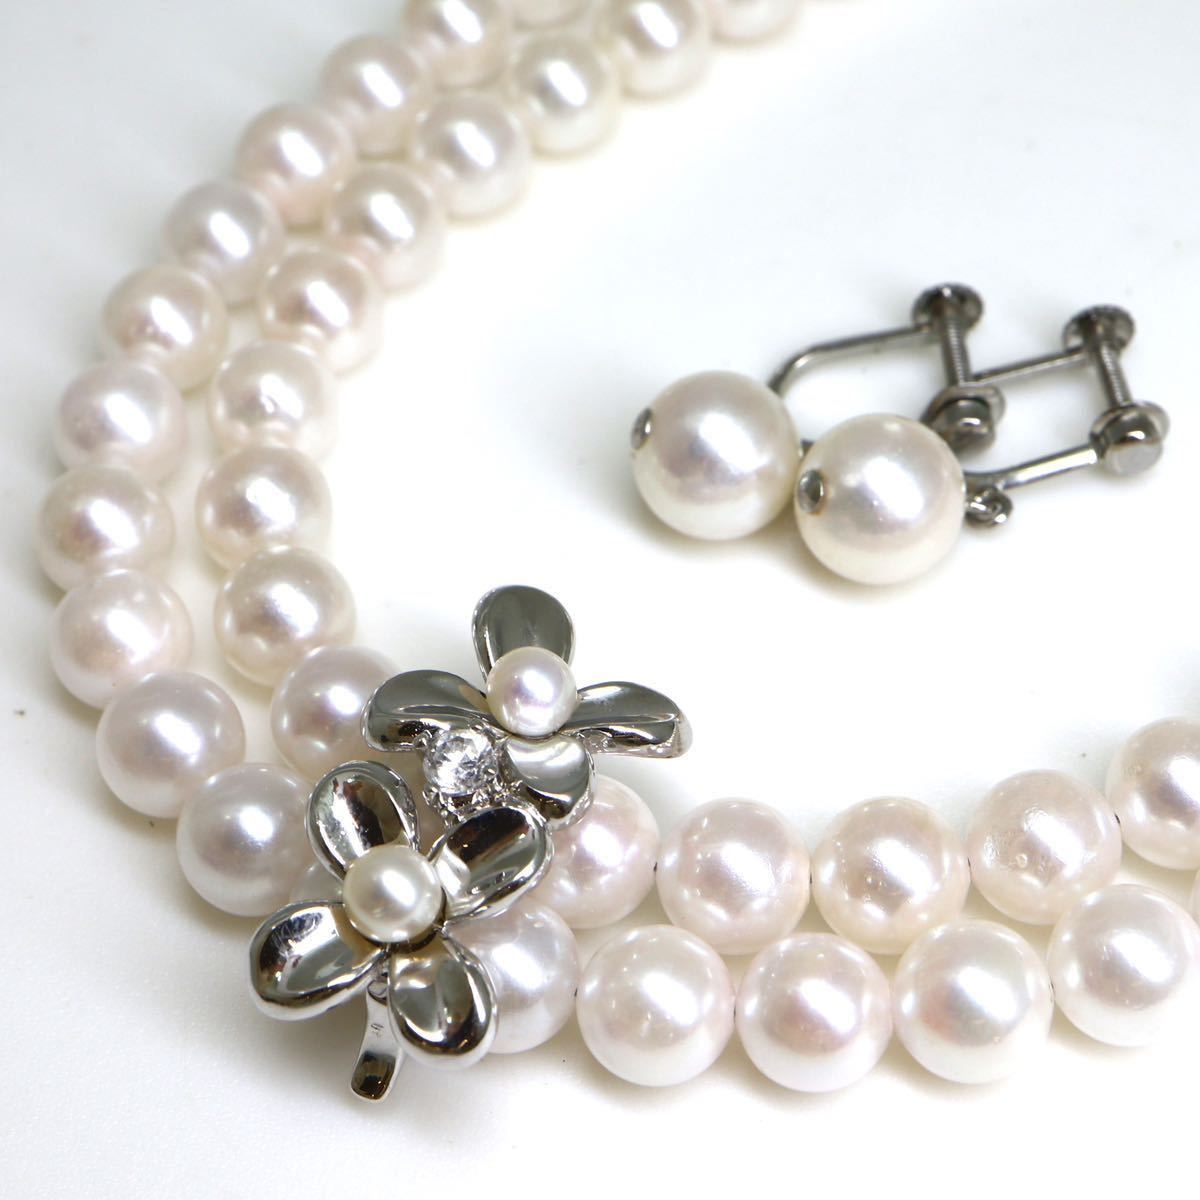 ◆アコヤ本真珠ネックレス&イヤリング◆O 62.9g 34.5cm 6.5mm珠 真珠 pearl necklaceジュエリー DE0/EA0